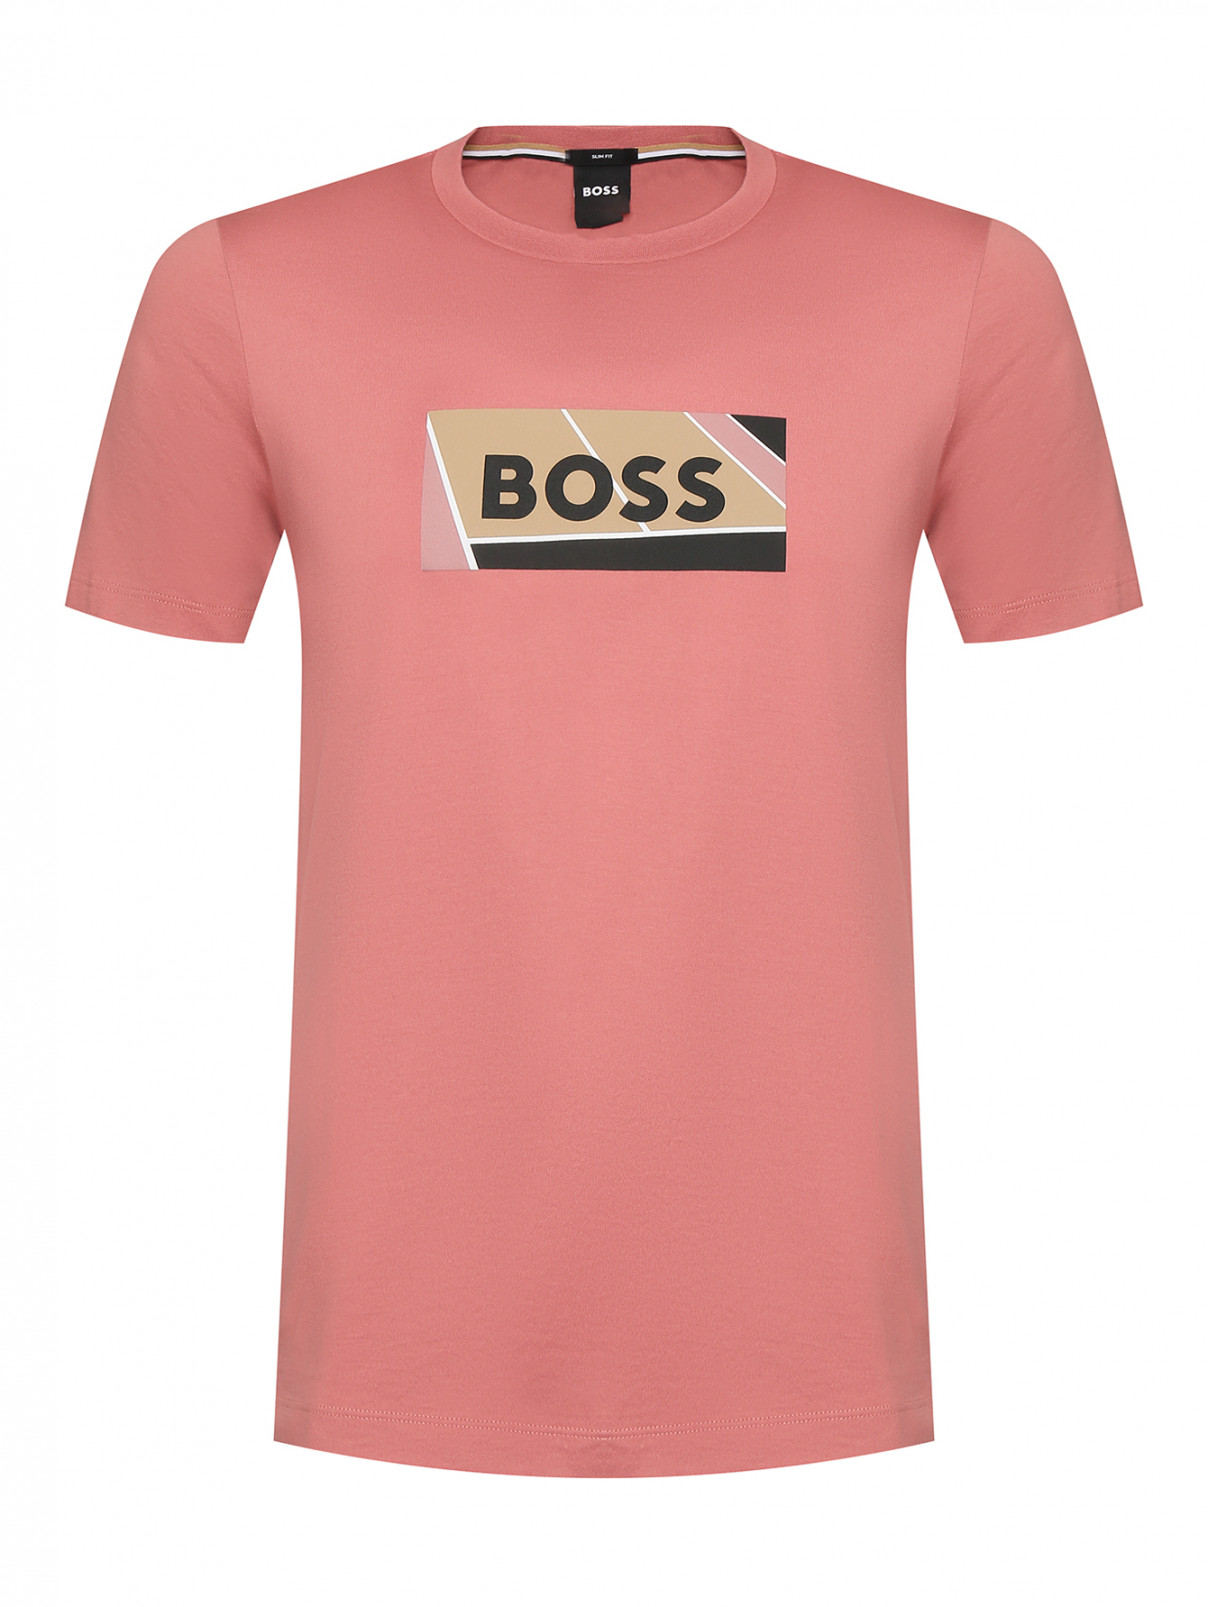 Футболка с логотипом Boss  –  Общий вид  – Цвет:  Розовый